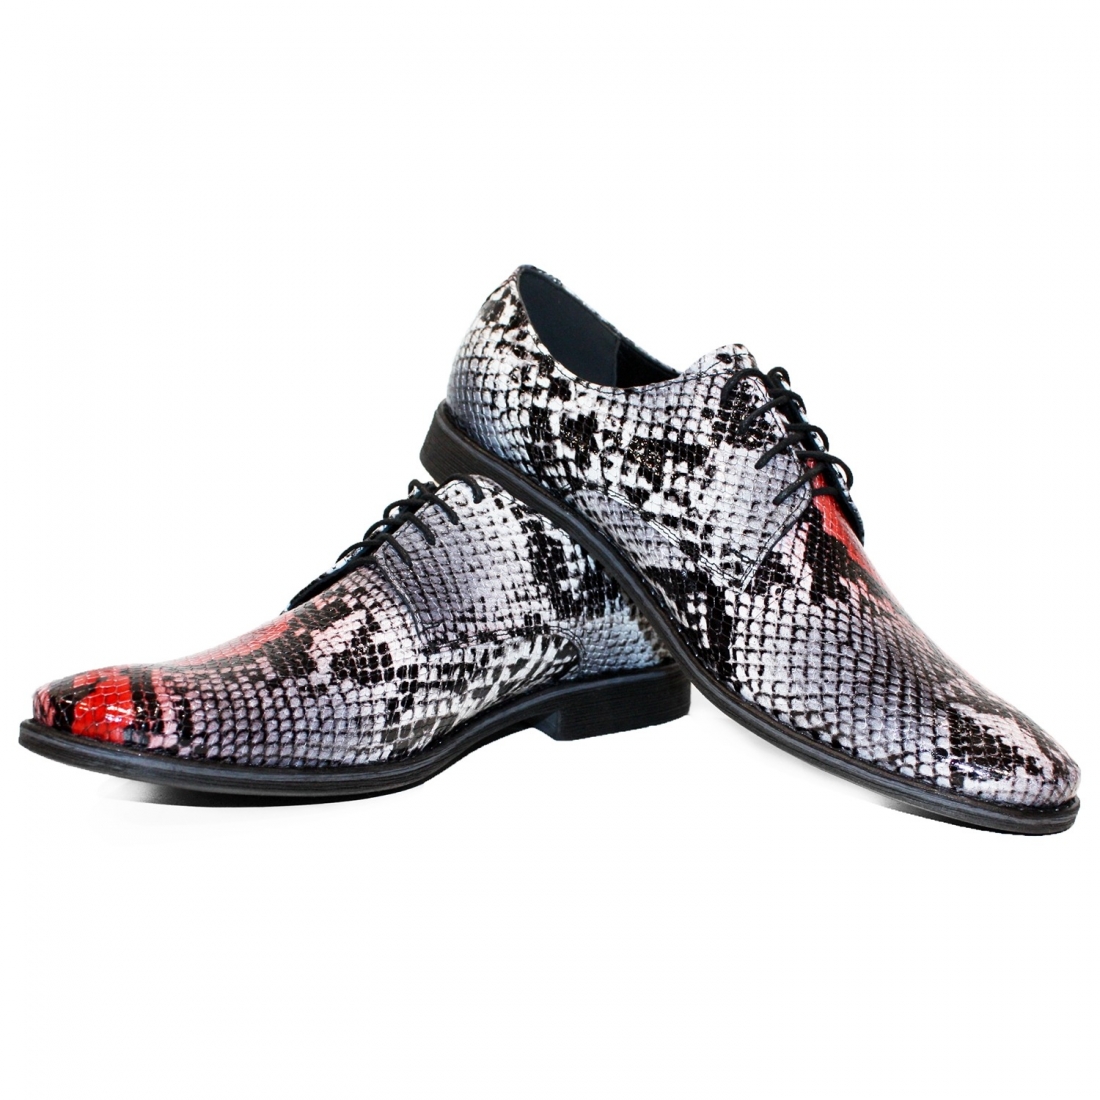 Modello Nobello - Scarpe Classiche - Handmade Colorful Italian Leather Shoes